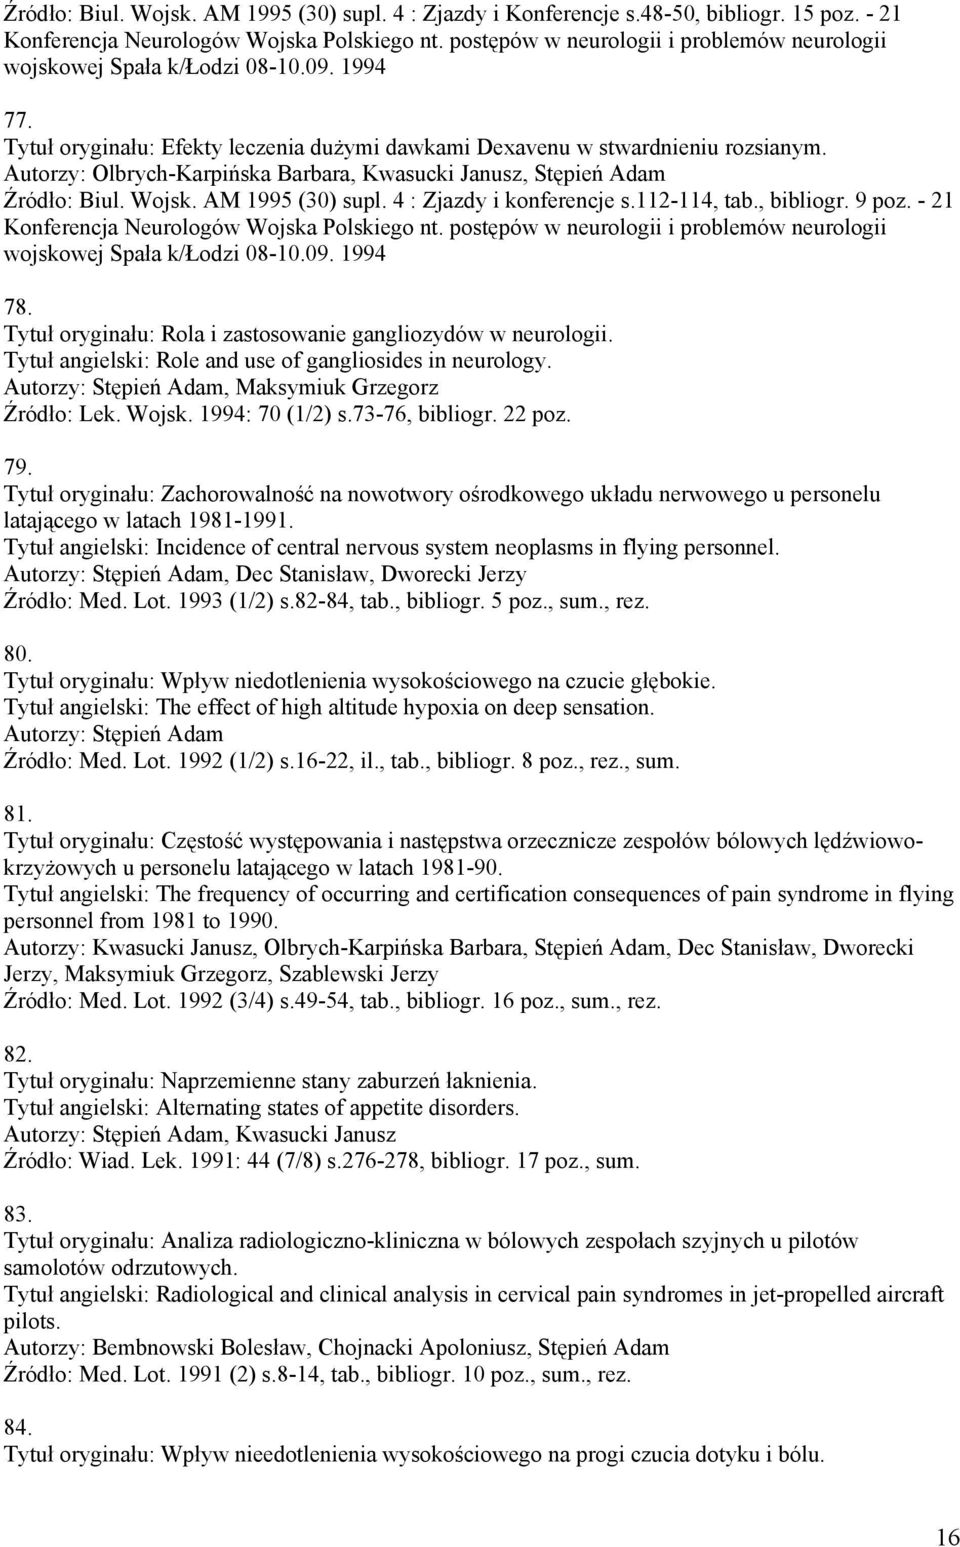 Autorzy: Olbrych-Karpińska Barbara, Kwasucki Janusz, Stępień Adam Źródło: Biul. Wojsk. AM 1995 (30) supl. 4 : Zjazdy i konferencje s.112-114, tab., bibliogr. 9 poz.